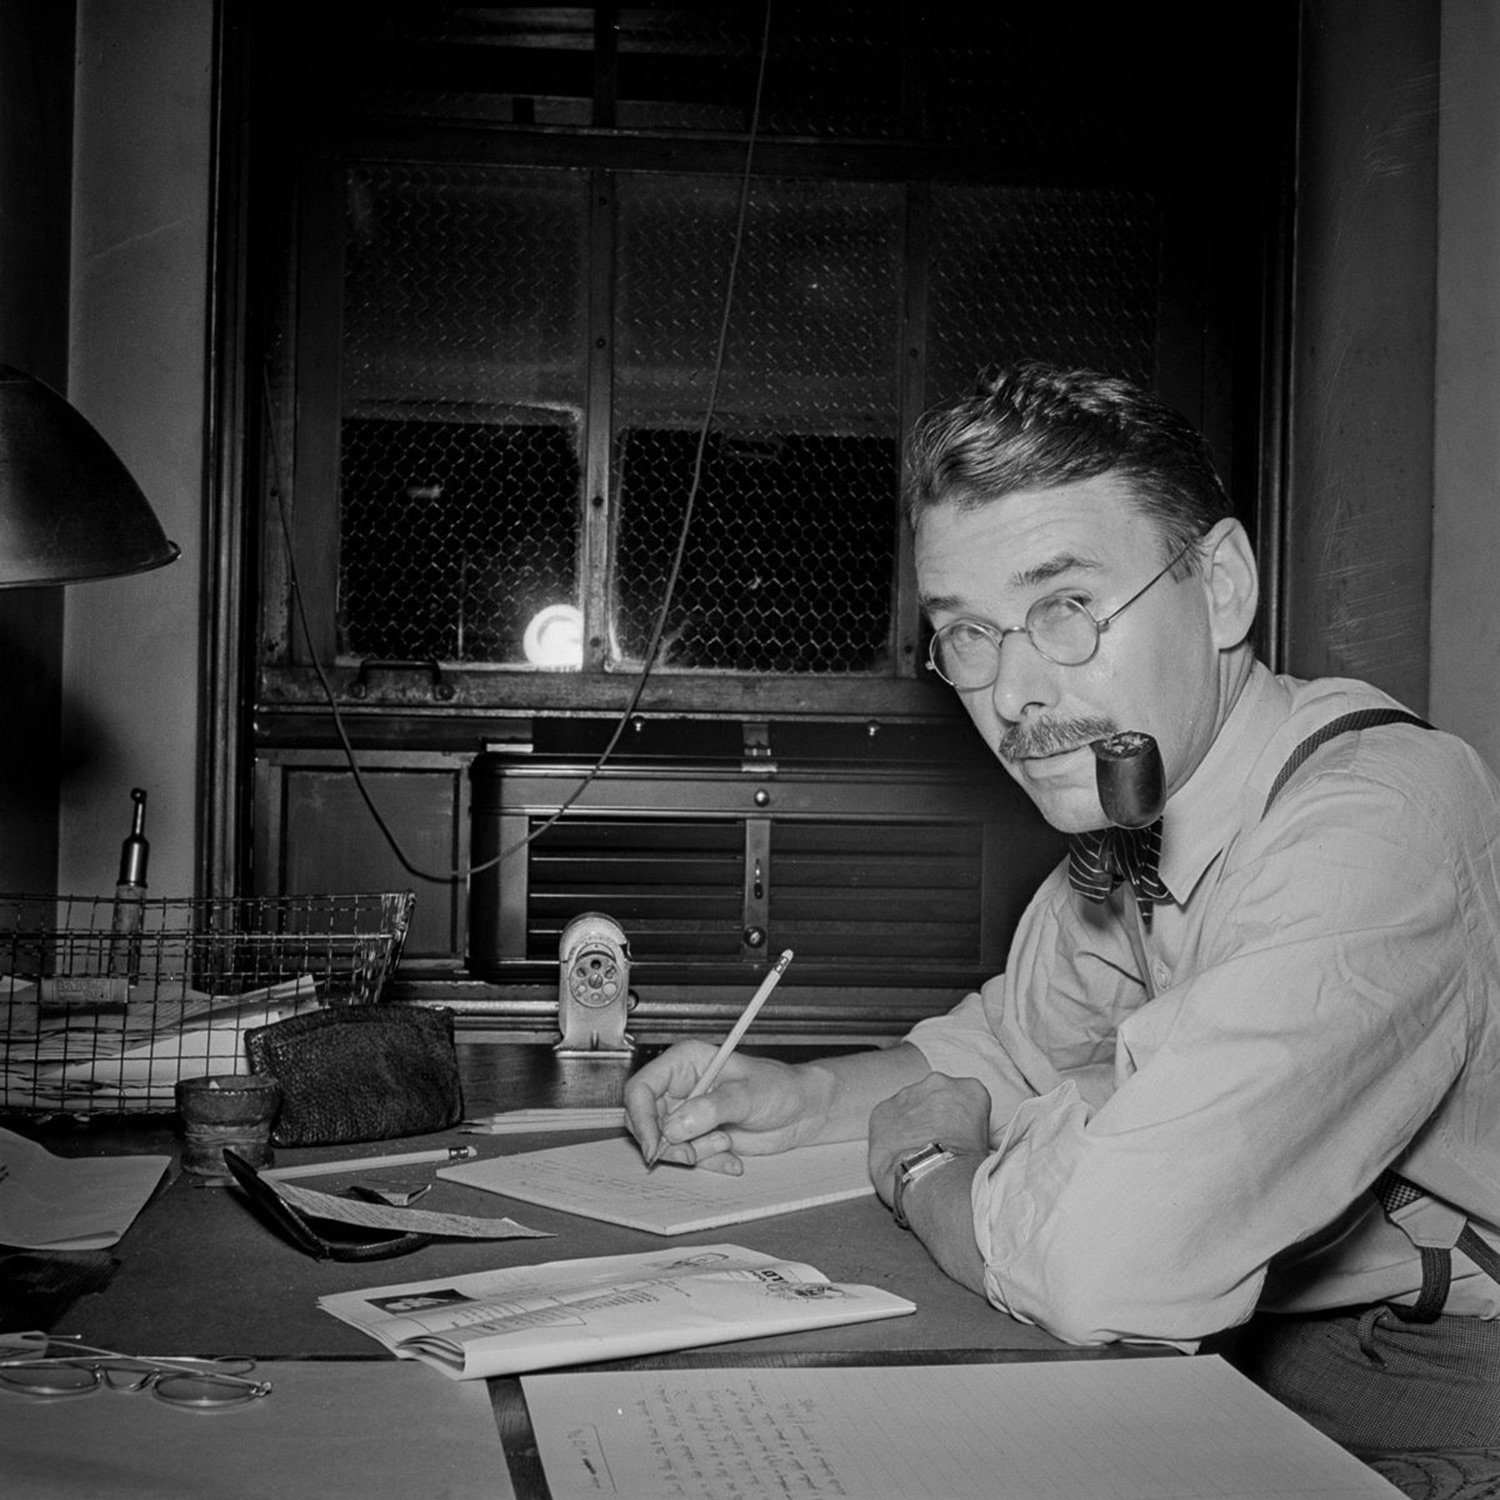 New York Times Newsroom 1940's